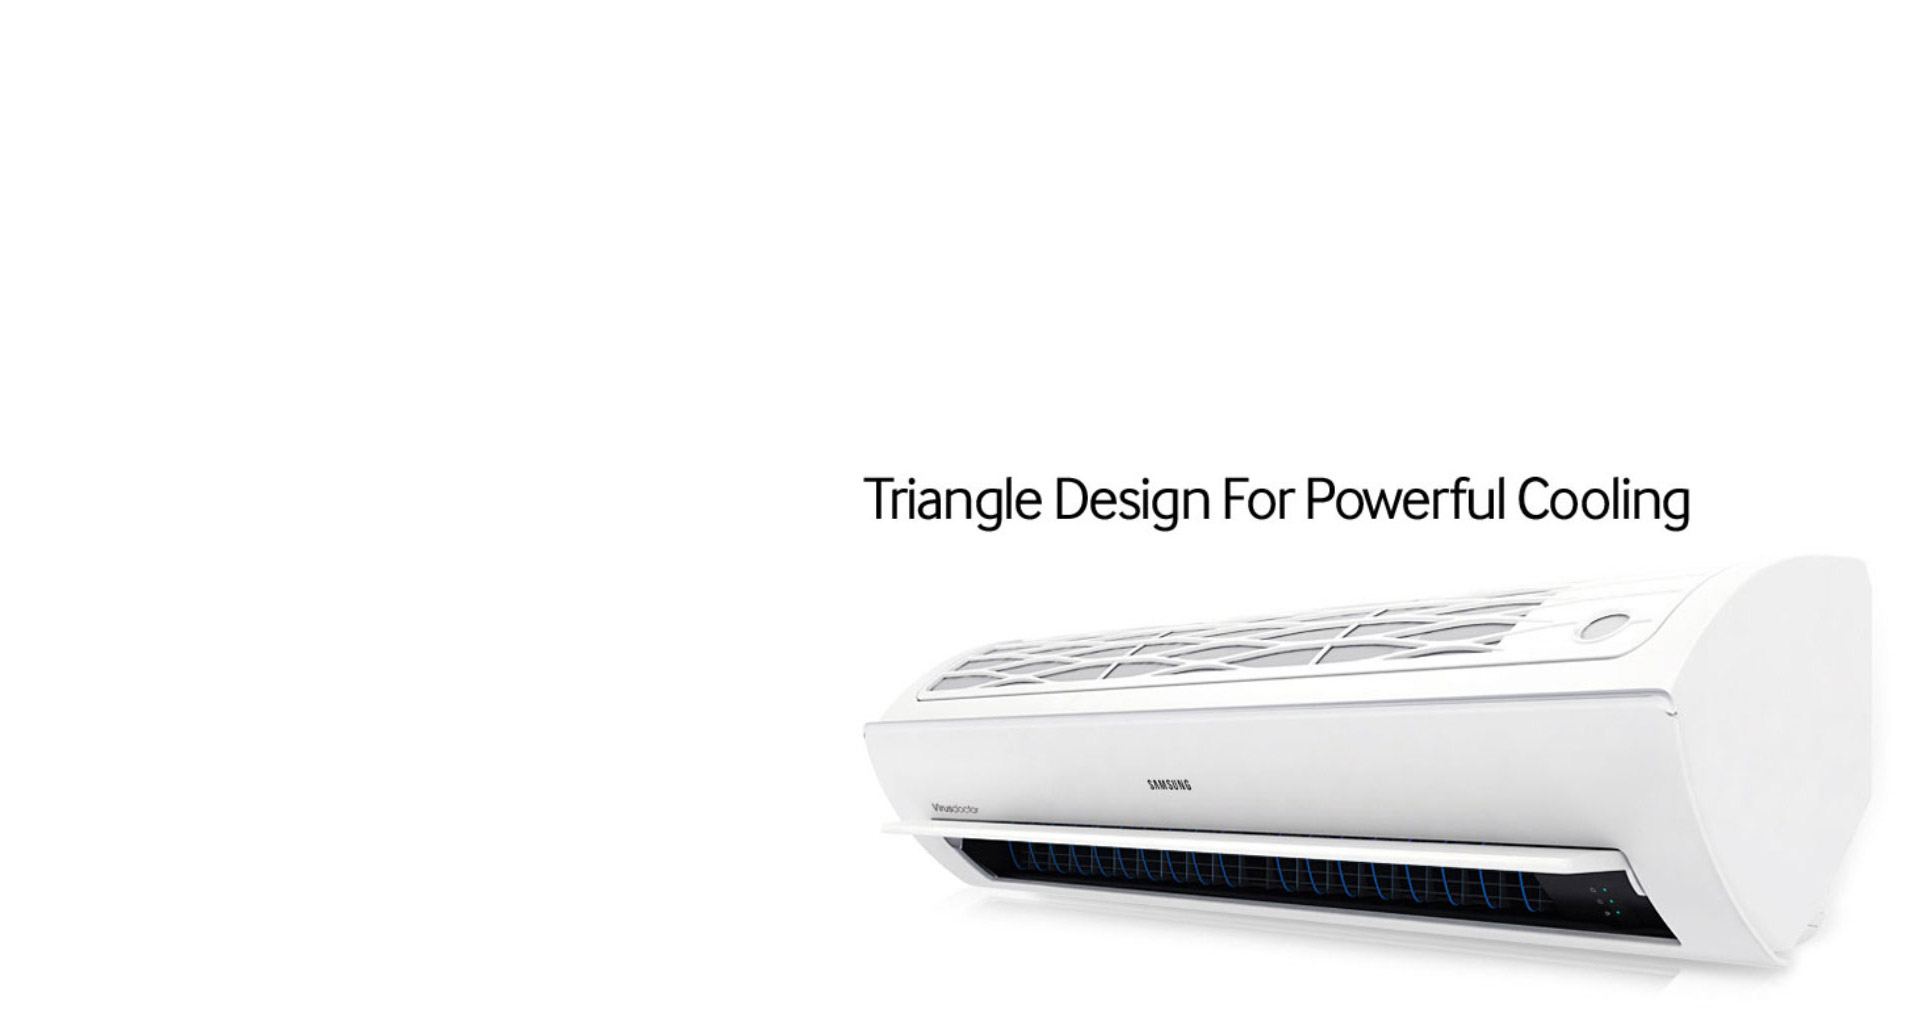 طراحی سه وجهی (Triangle Design) کولر گازی Good، با خنک کنندگی قدرتمند